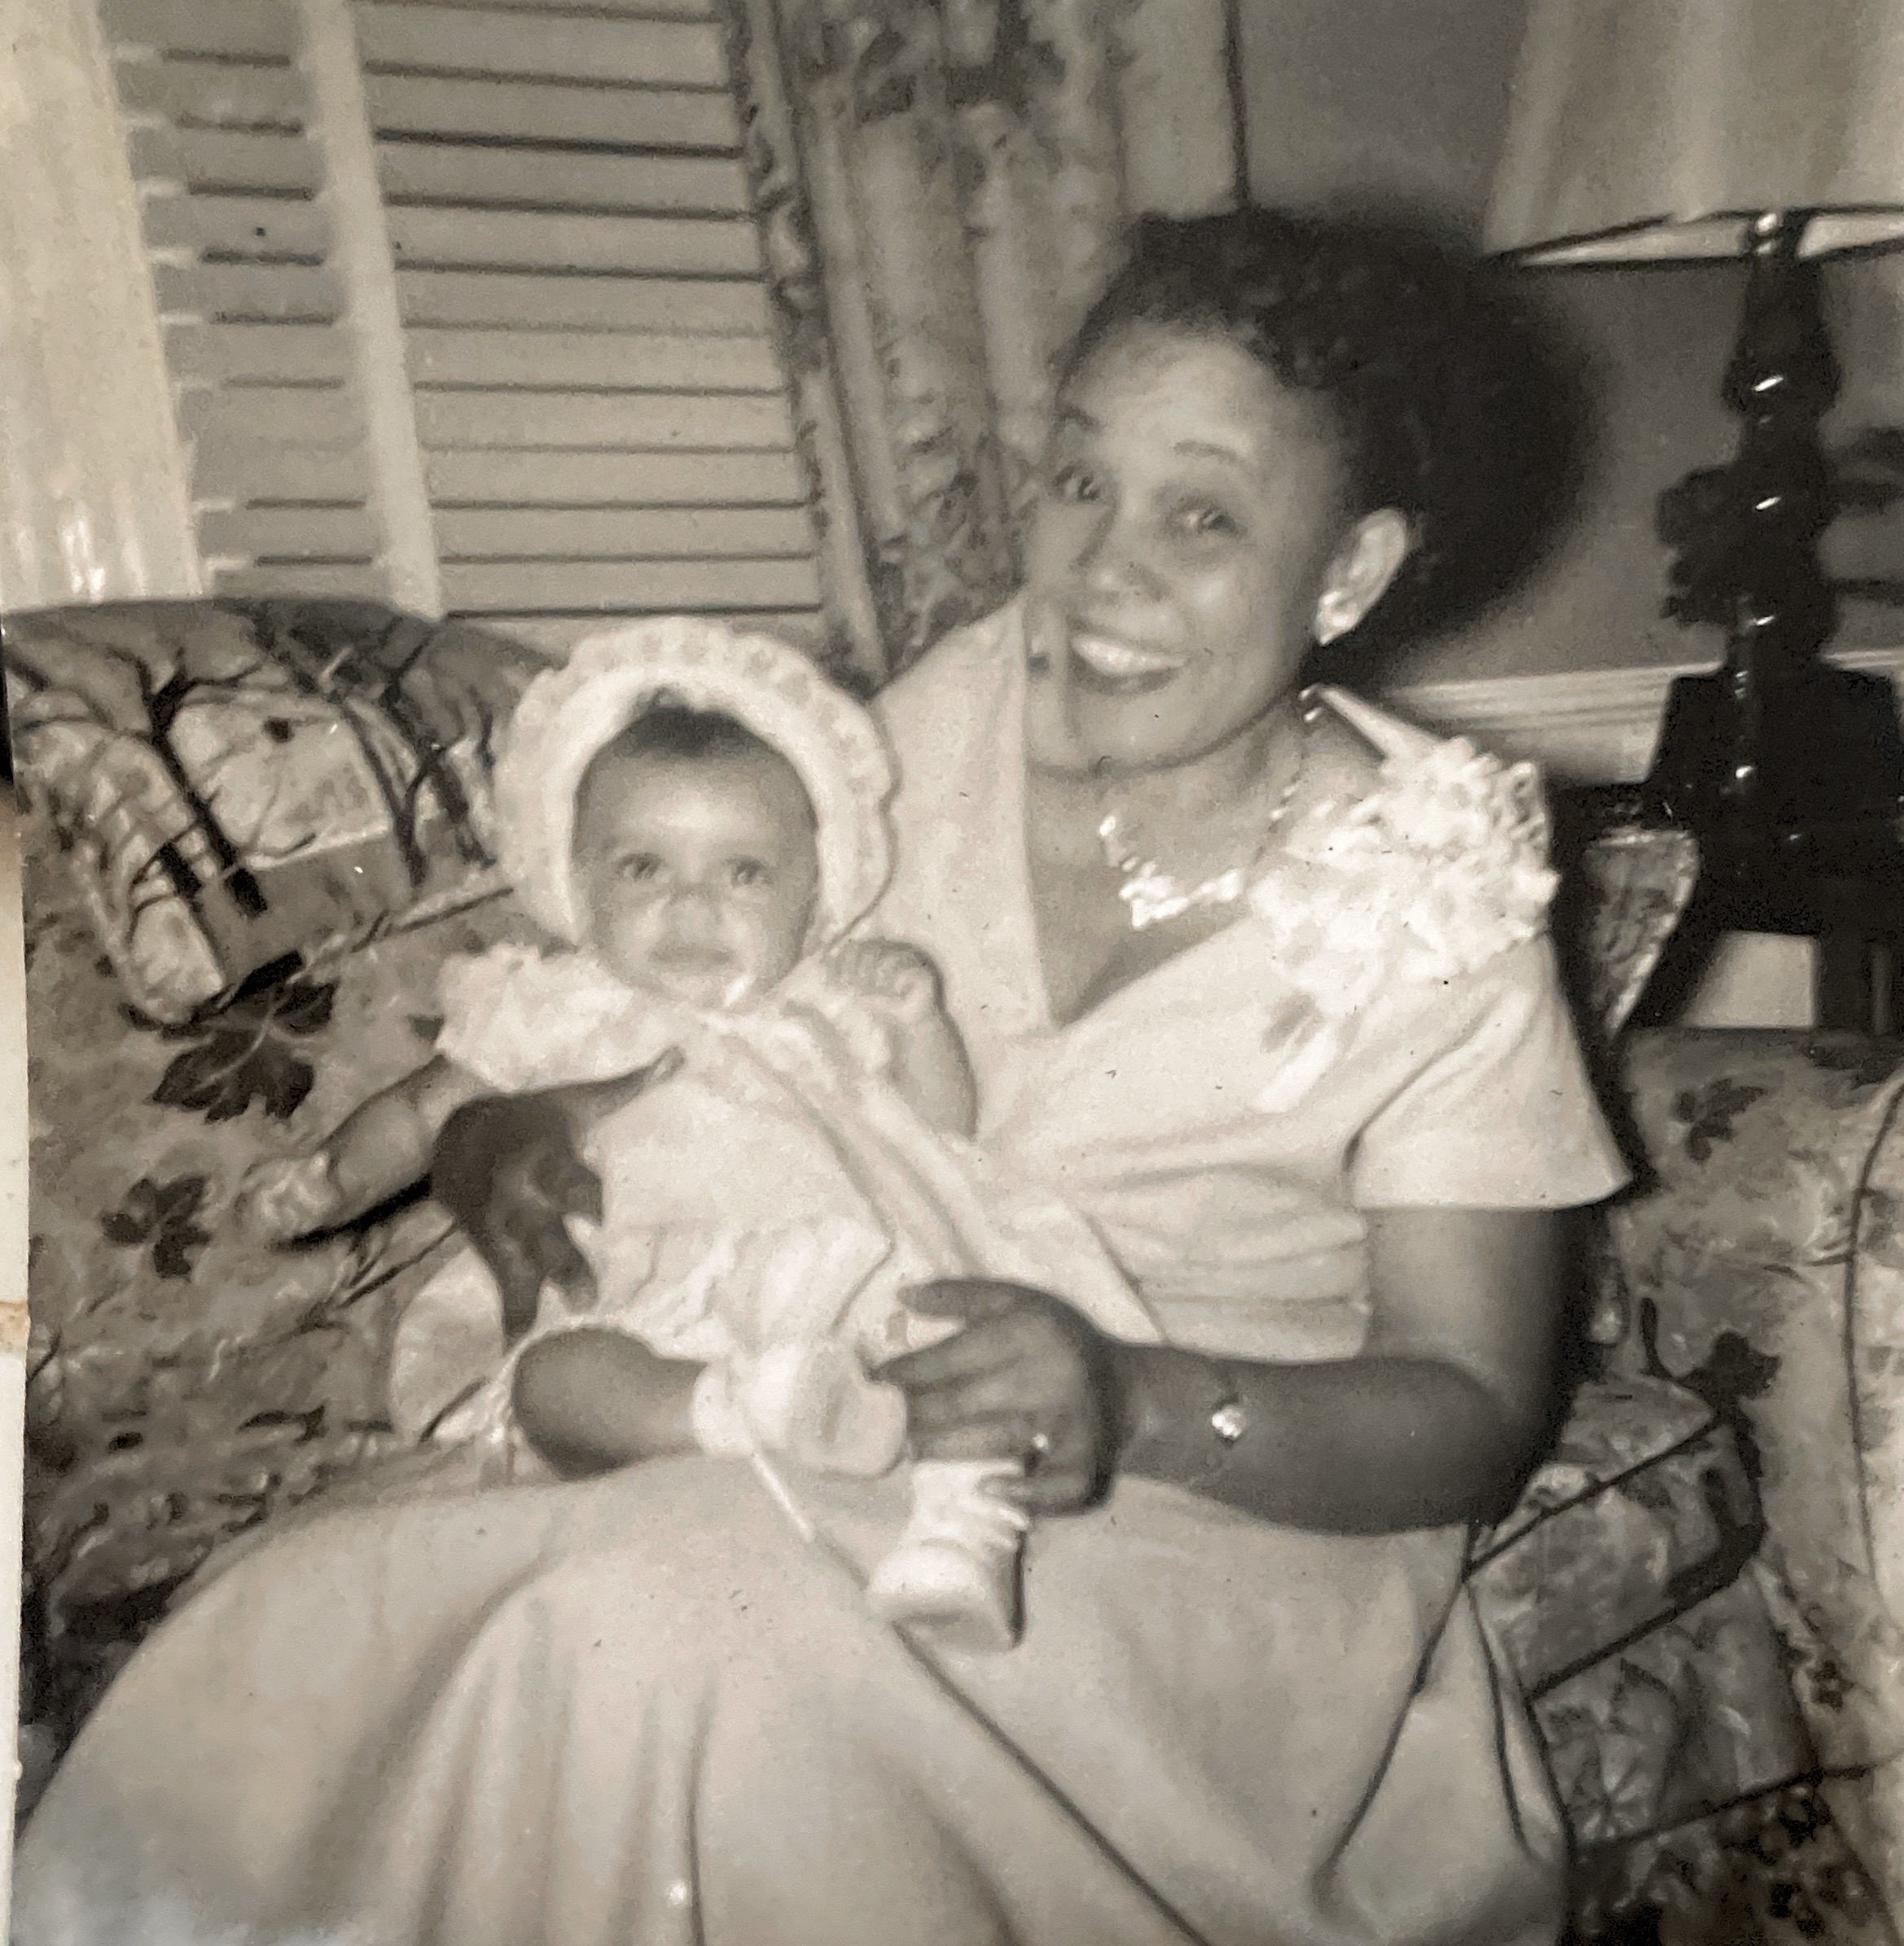 1956 - Earline Smith and Baby Valeska